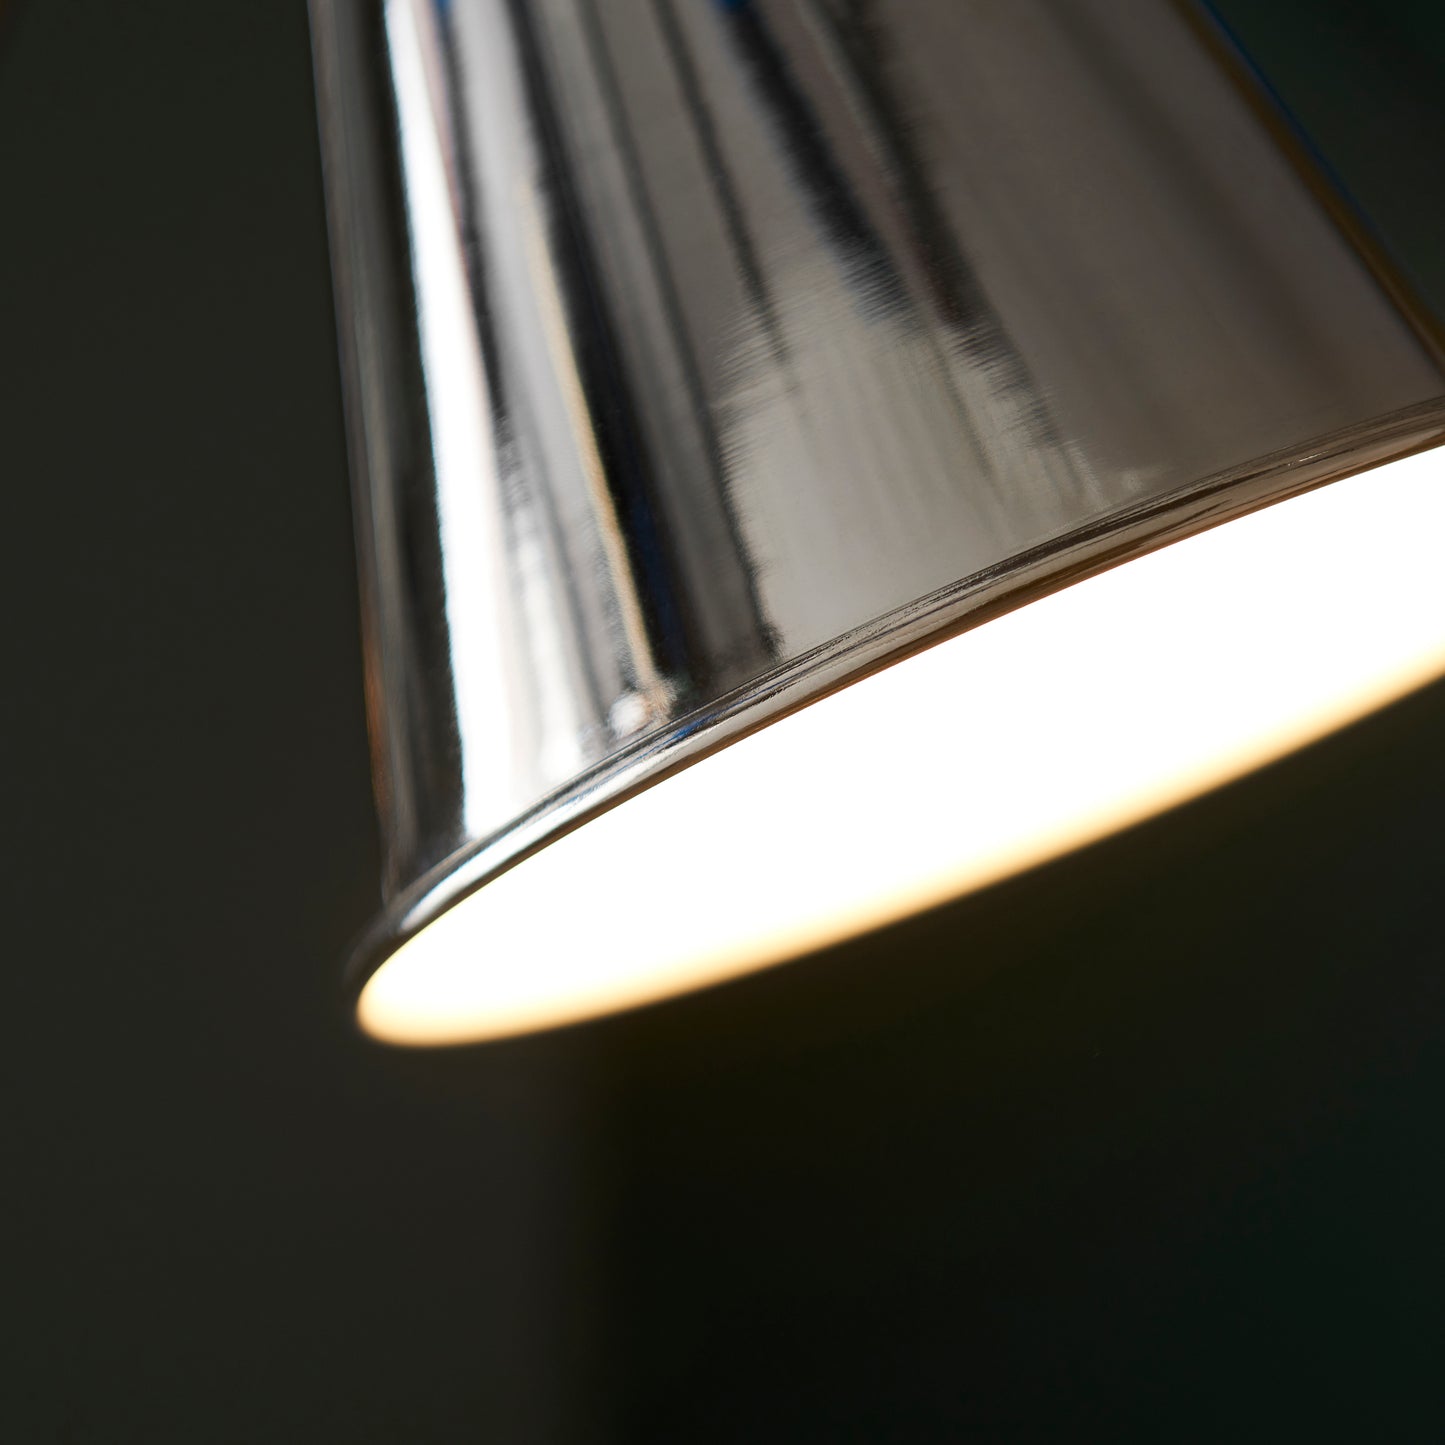 Bright Nickel Plated Adjustable Floor Lamp - ID 11692